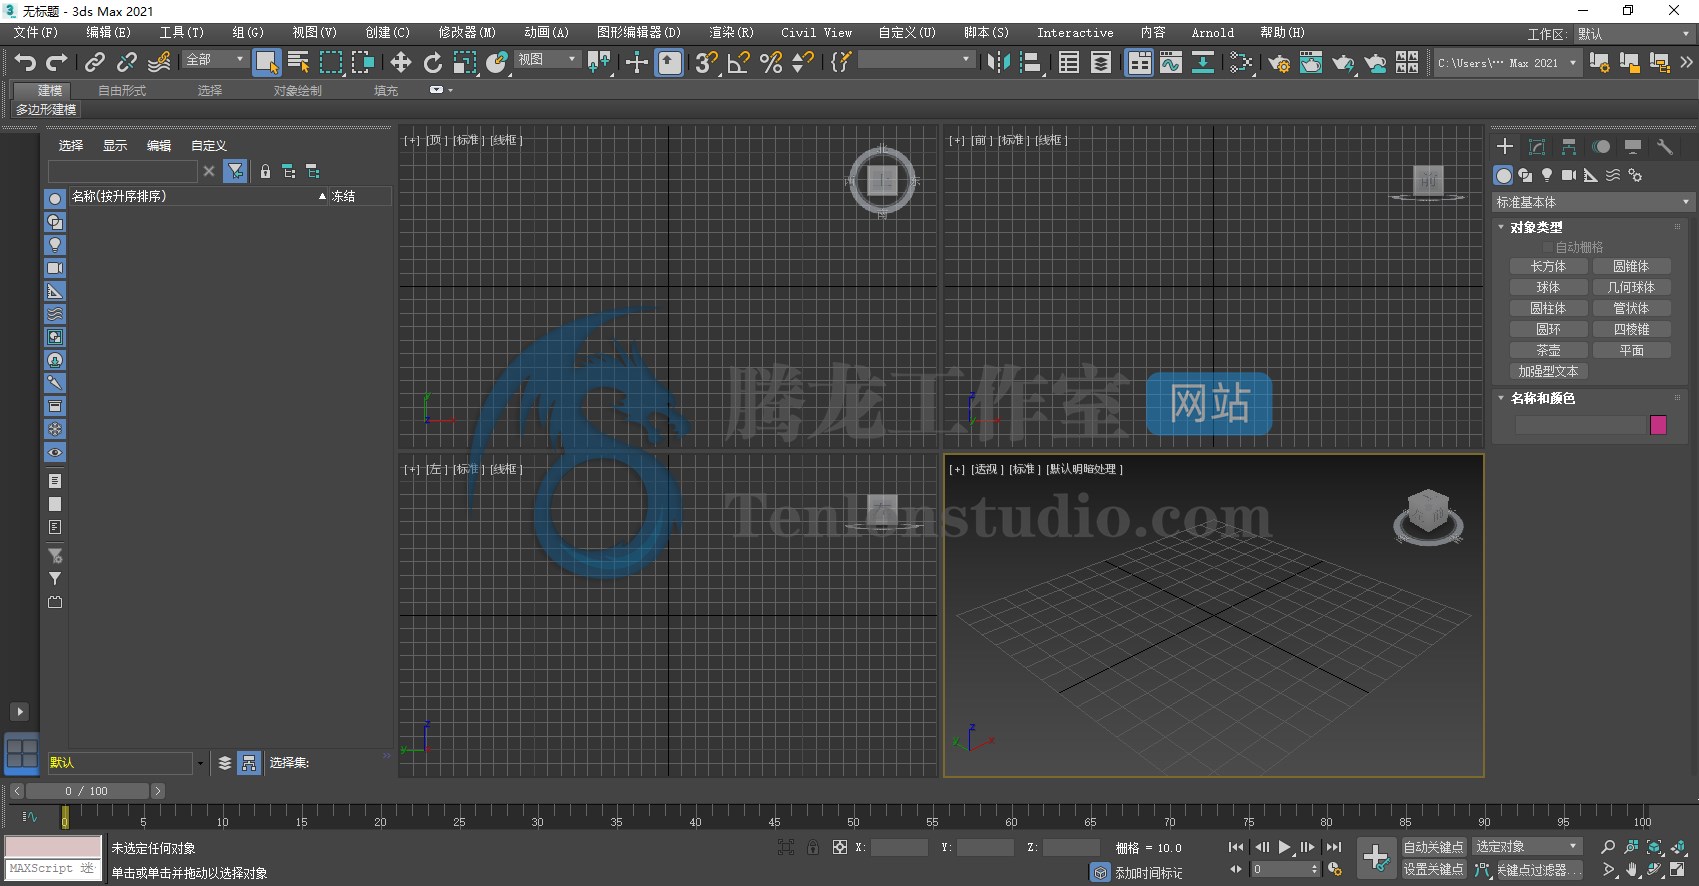 3D建模和渲染软件 Autodesk 3ds Max 2021 v23.3.0.3201 破解版